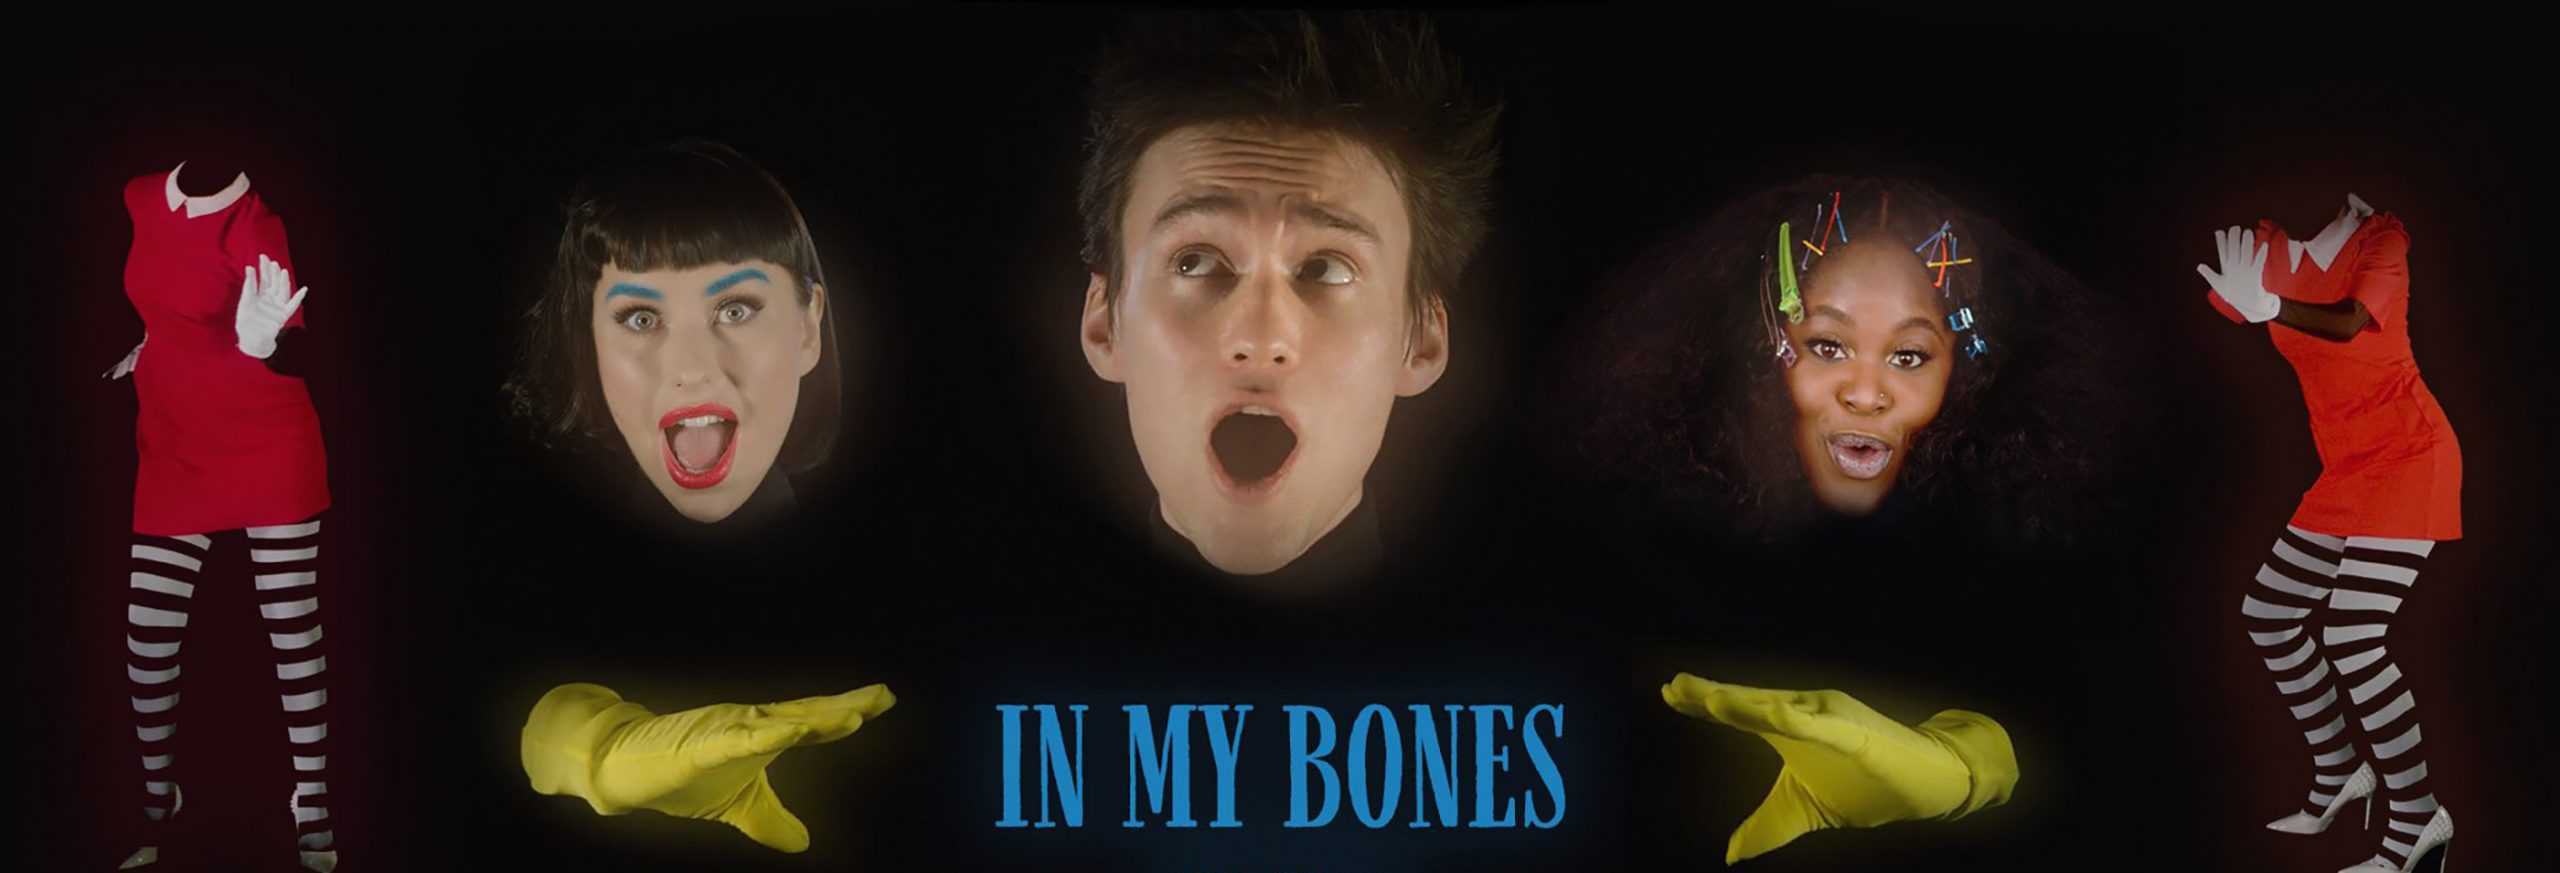 Jacob Collier "In My Bones"